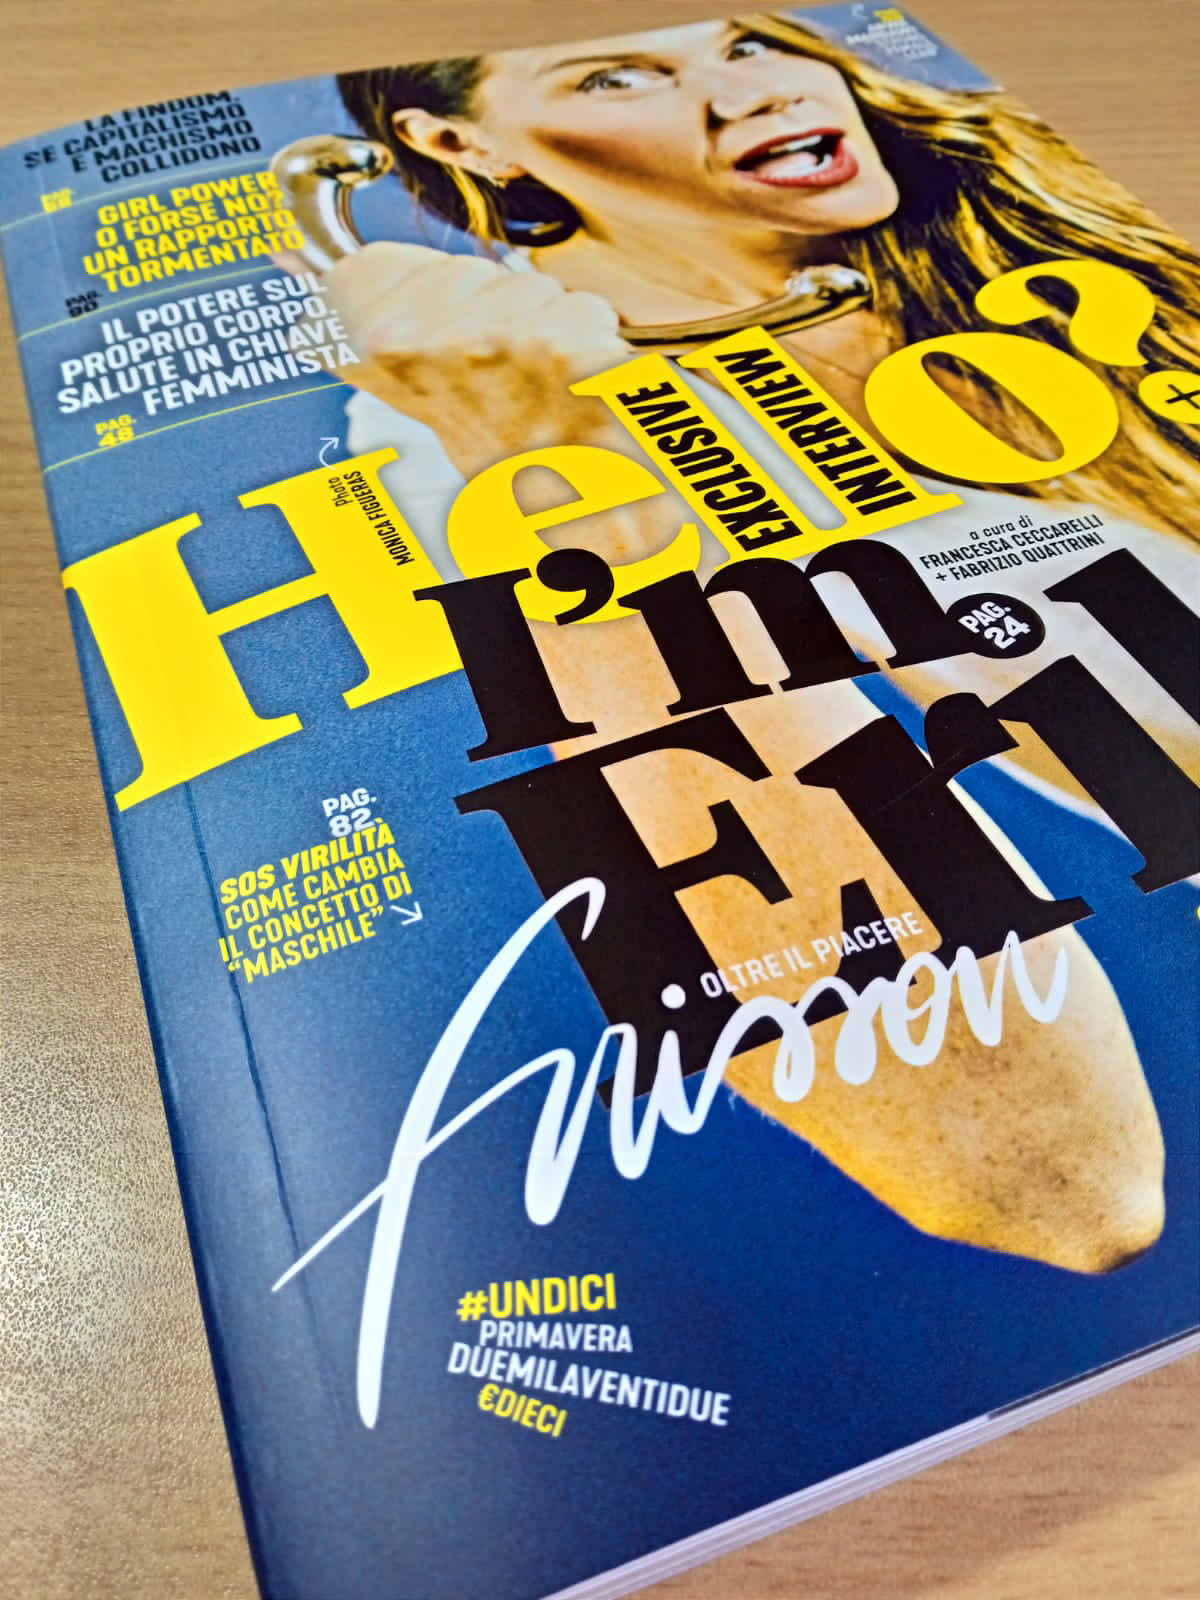 cover design editorial design  erika lust Francesco Mazzenga Frisson Magazine indie magazine Magazine design oltreilpiacere